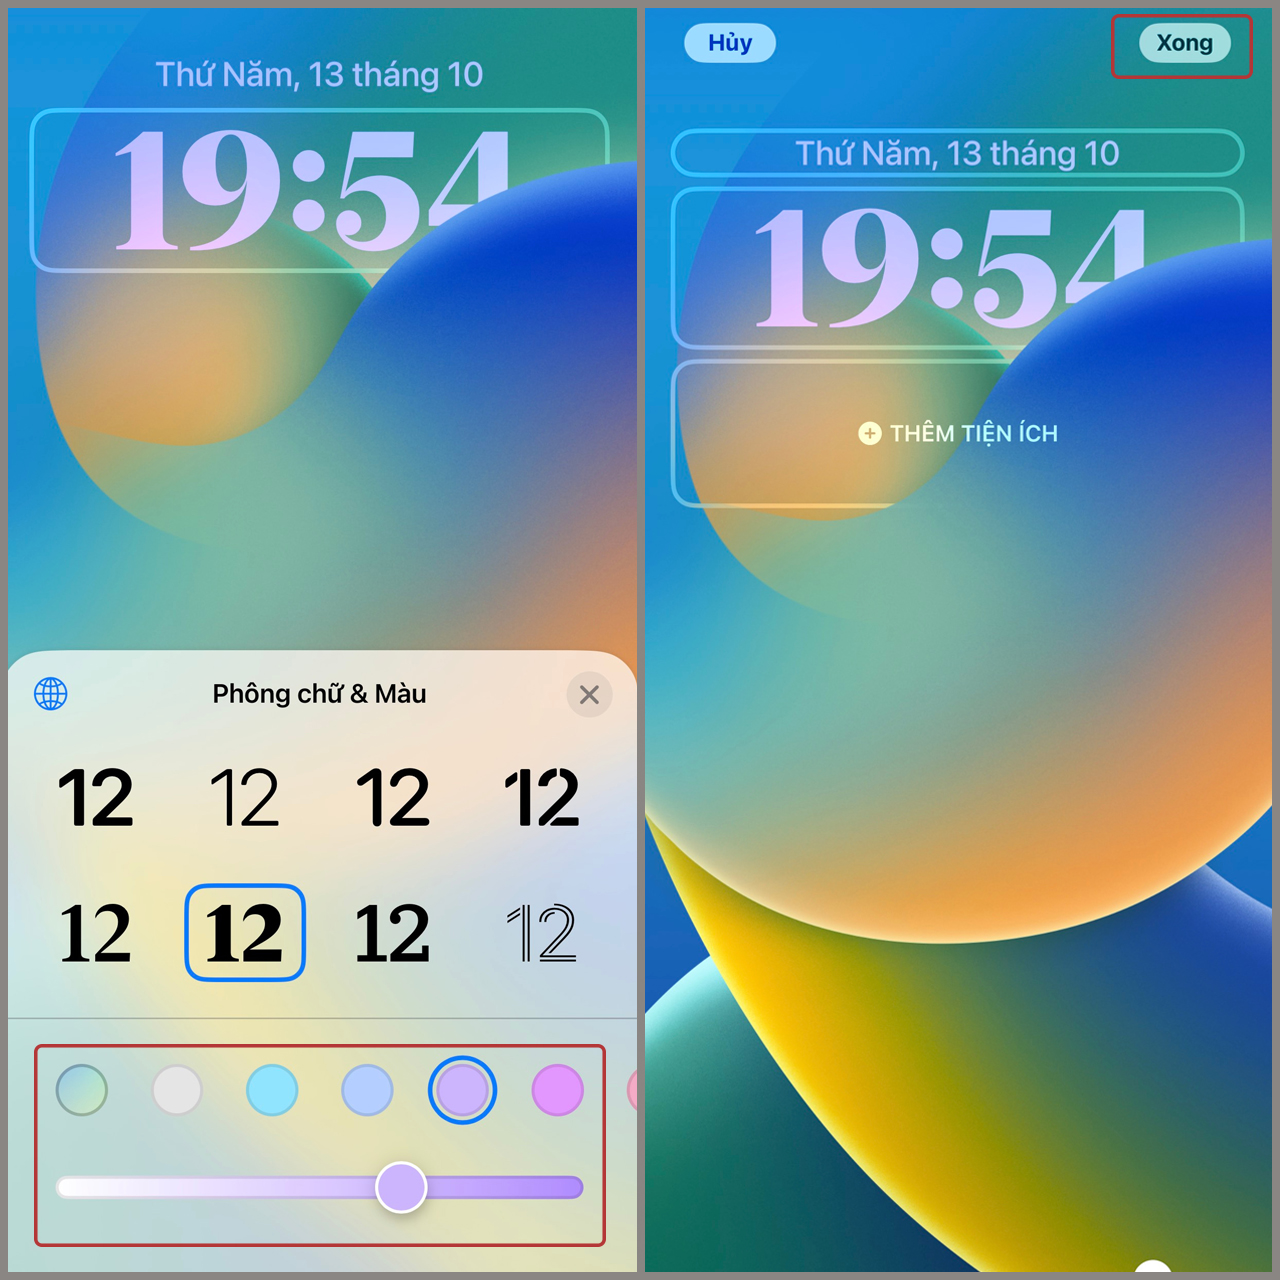 Kiểu đồng hồ iOS 16 - Là một phần của giao diện người dùng mới nhất trên iOS 16, các kiểu đồng hồ đa dạng và đẹp mắt sẽ giúp bạn dễ dàng tùy biến cho màn hình của mình theo phong cách riêng. Tùy chọn từ cổ điển đến hiện đại và đa phong cách, bạn có thể tìm thấy một kiểu đồng hồ phù hợp với sở thích của mình. Hãy xem qua hình ảnh liên quan để khám phá những kiểu đồng hồ thú vị của iOS 16.